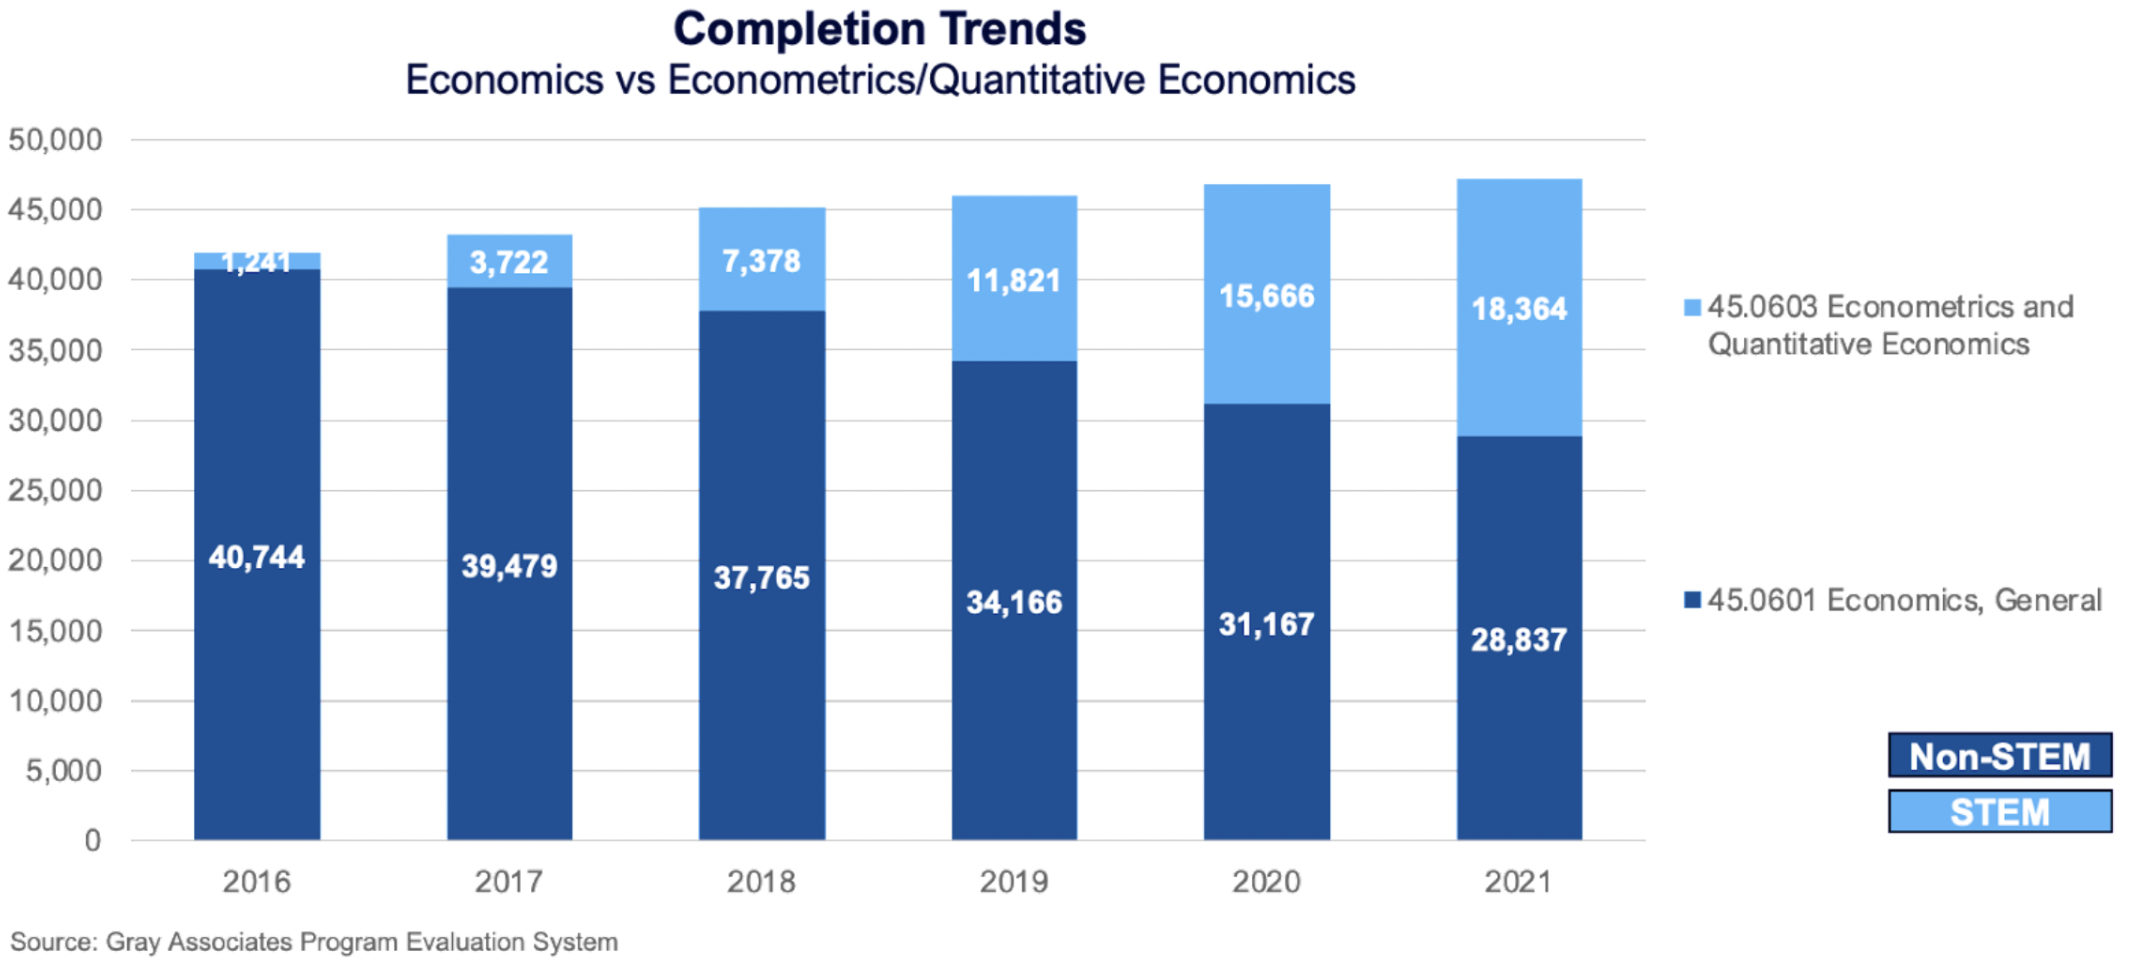 Completions Trends (Economics vs Econometrics/Quantitative Economics)